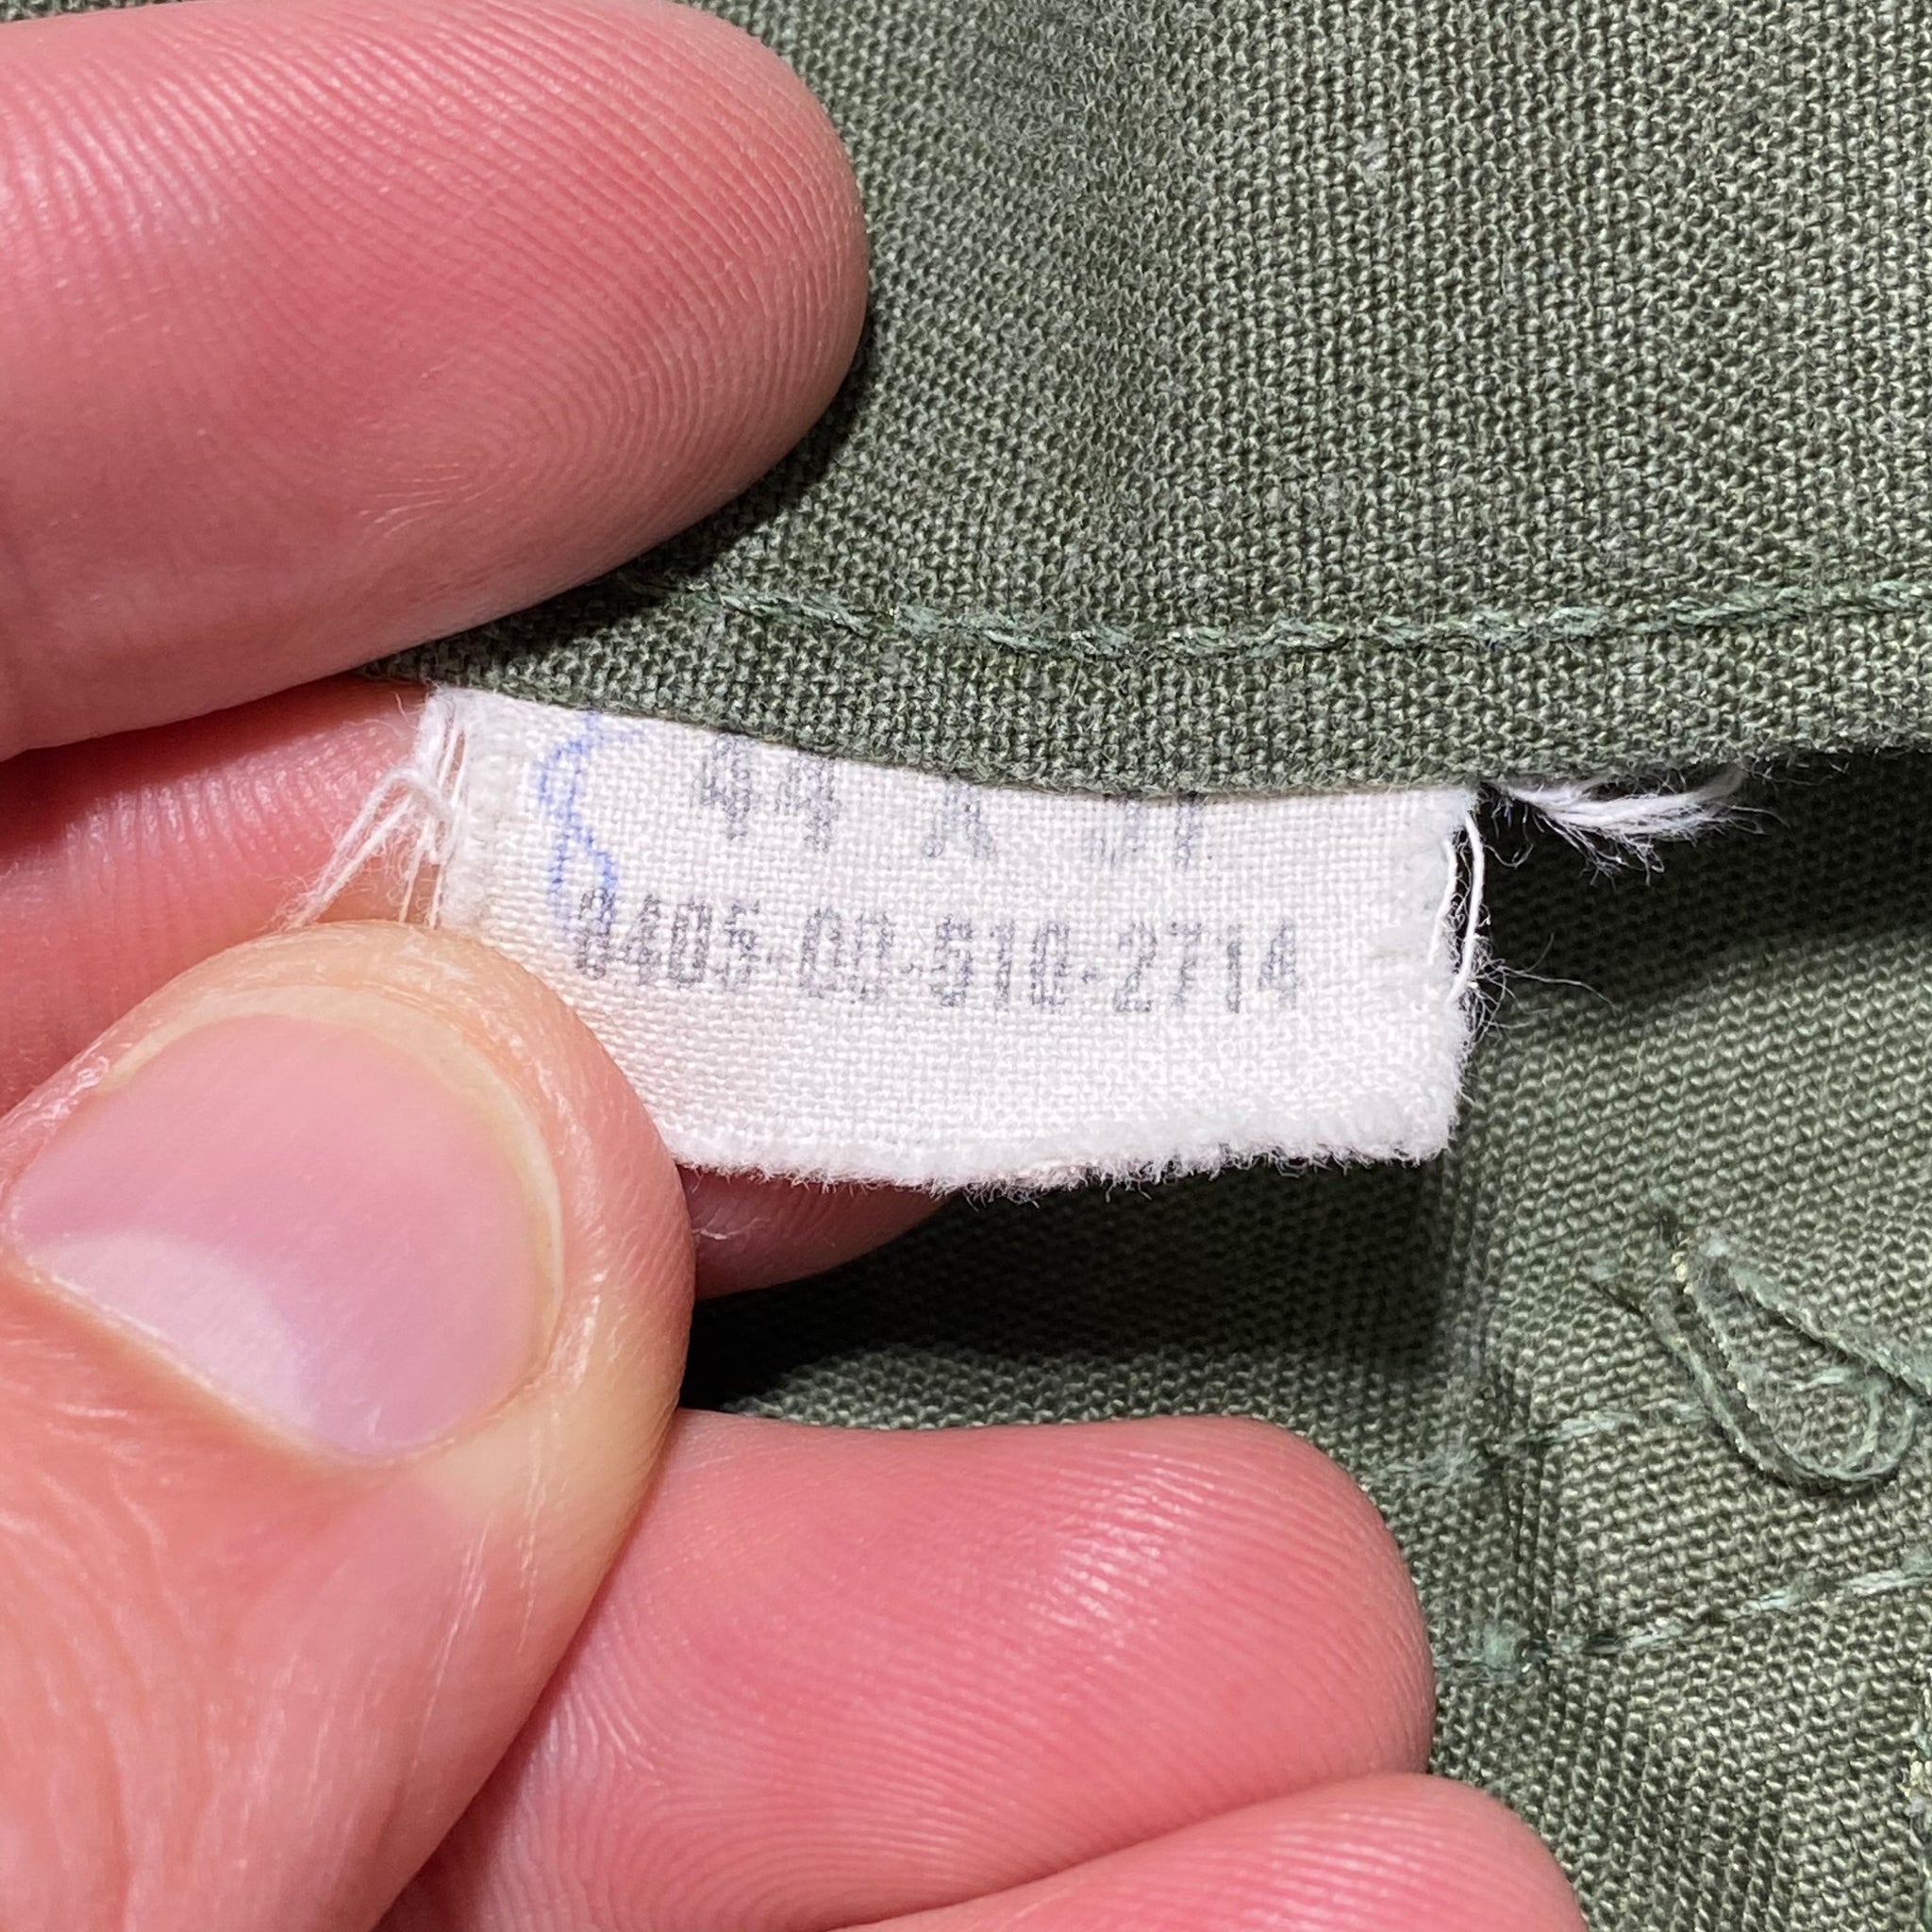 OG107 military pants. 44/31